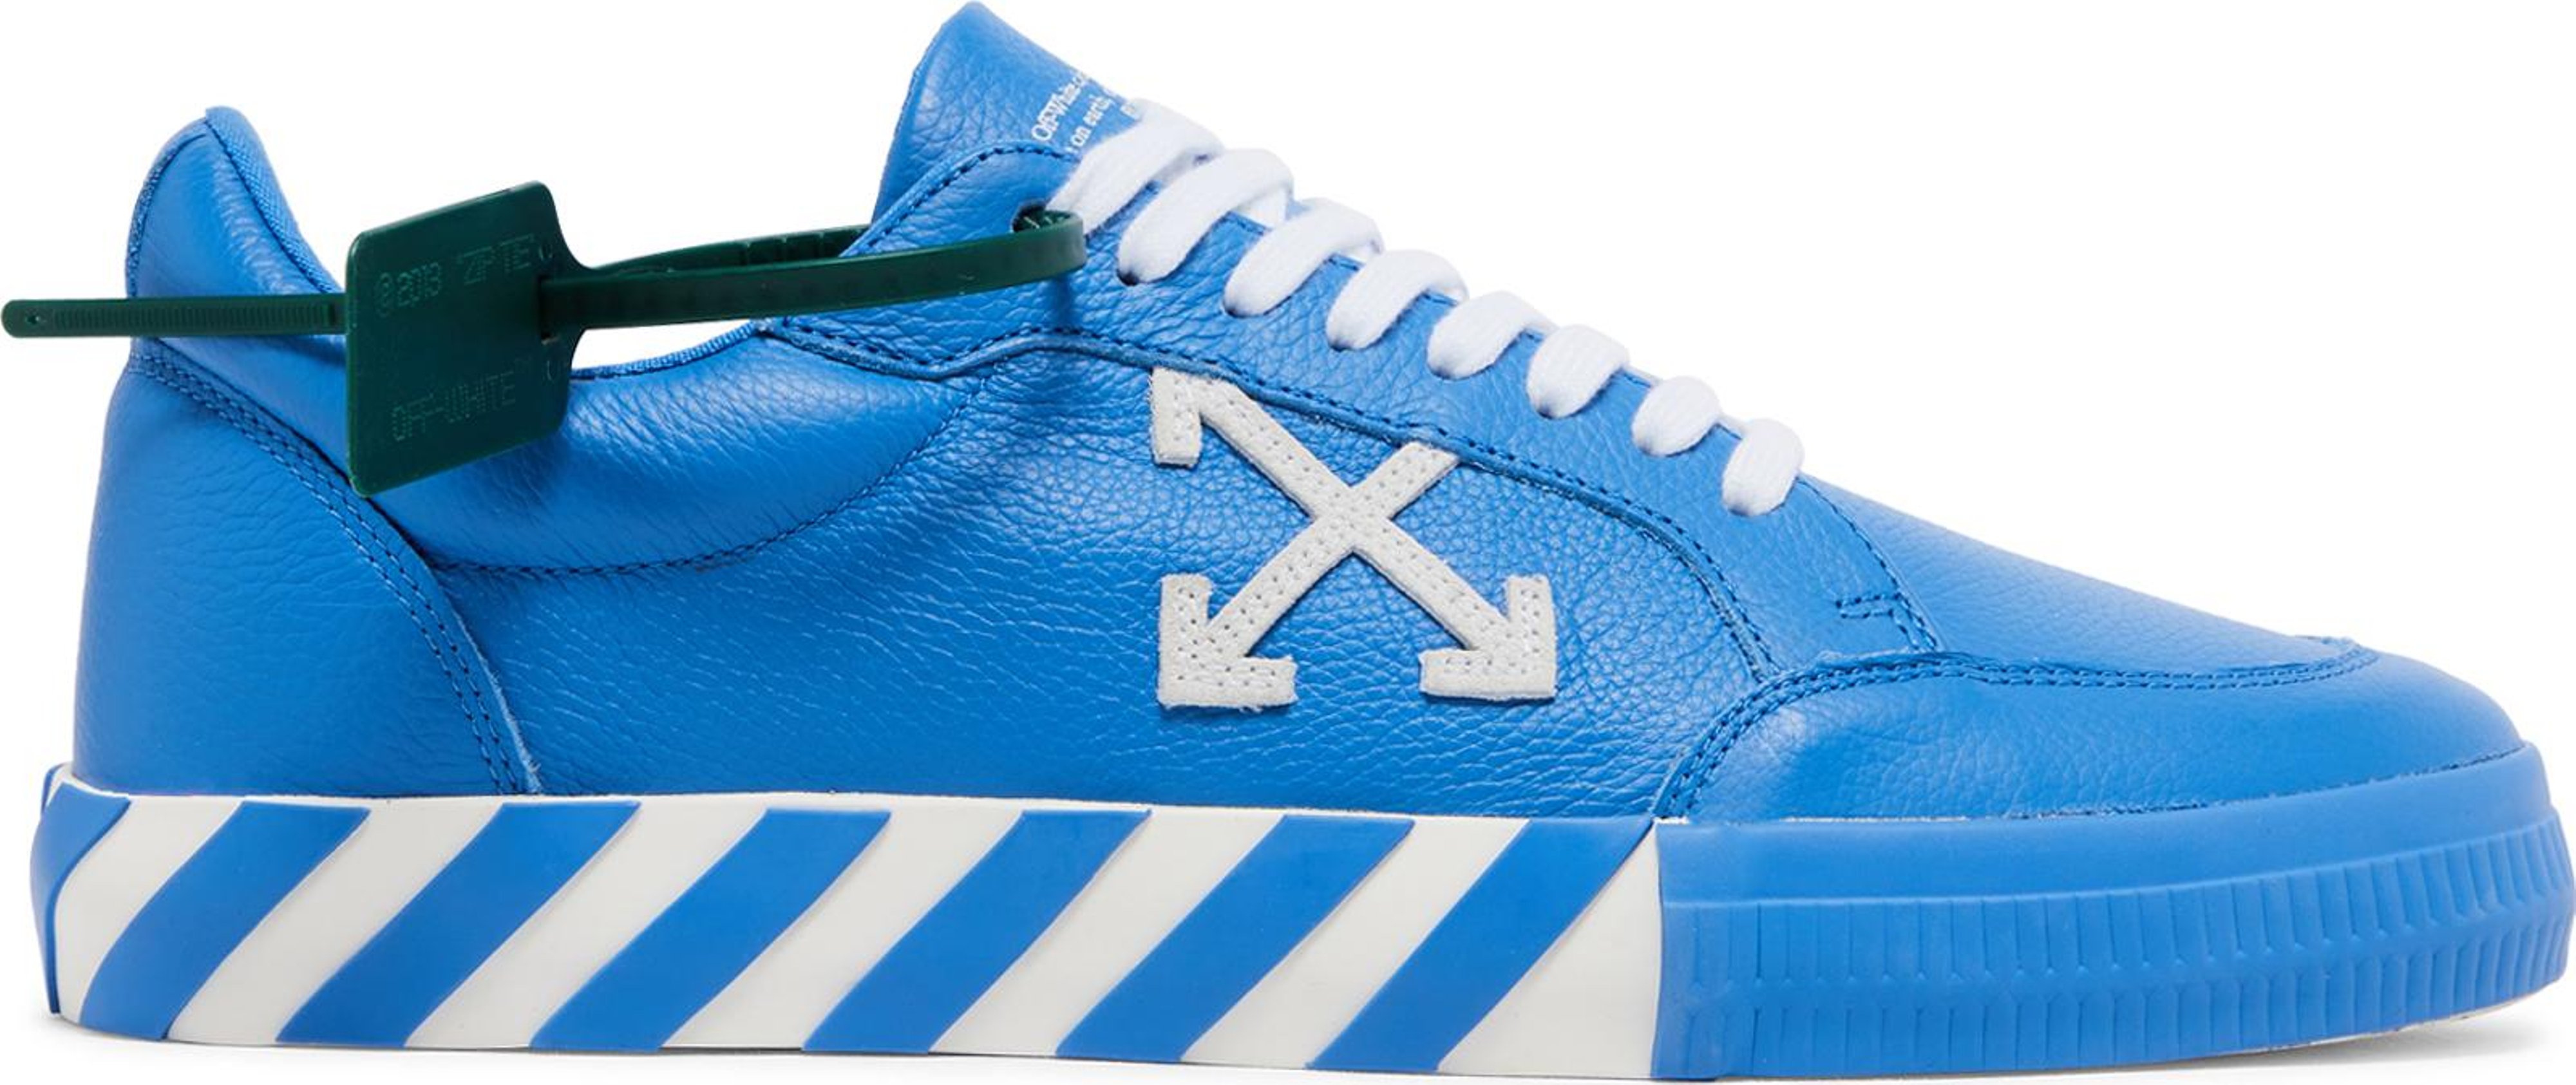 Buy Off-White Vulc Sneaker 'Blue White' - OMIA085S22LEA002 4501 - Blue ...